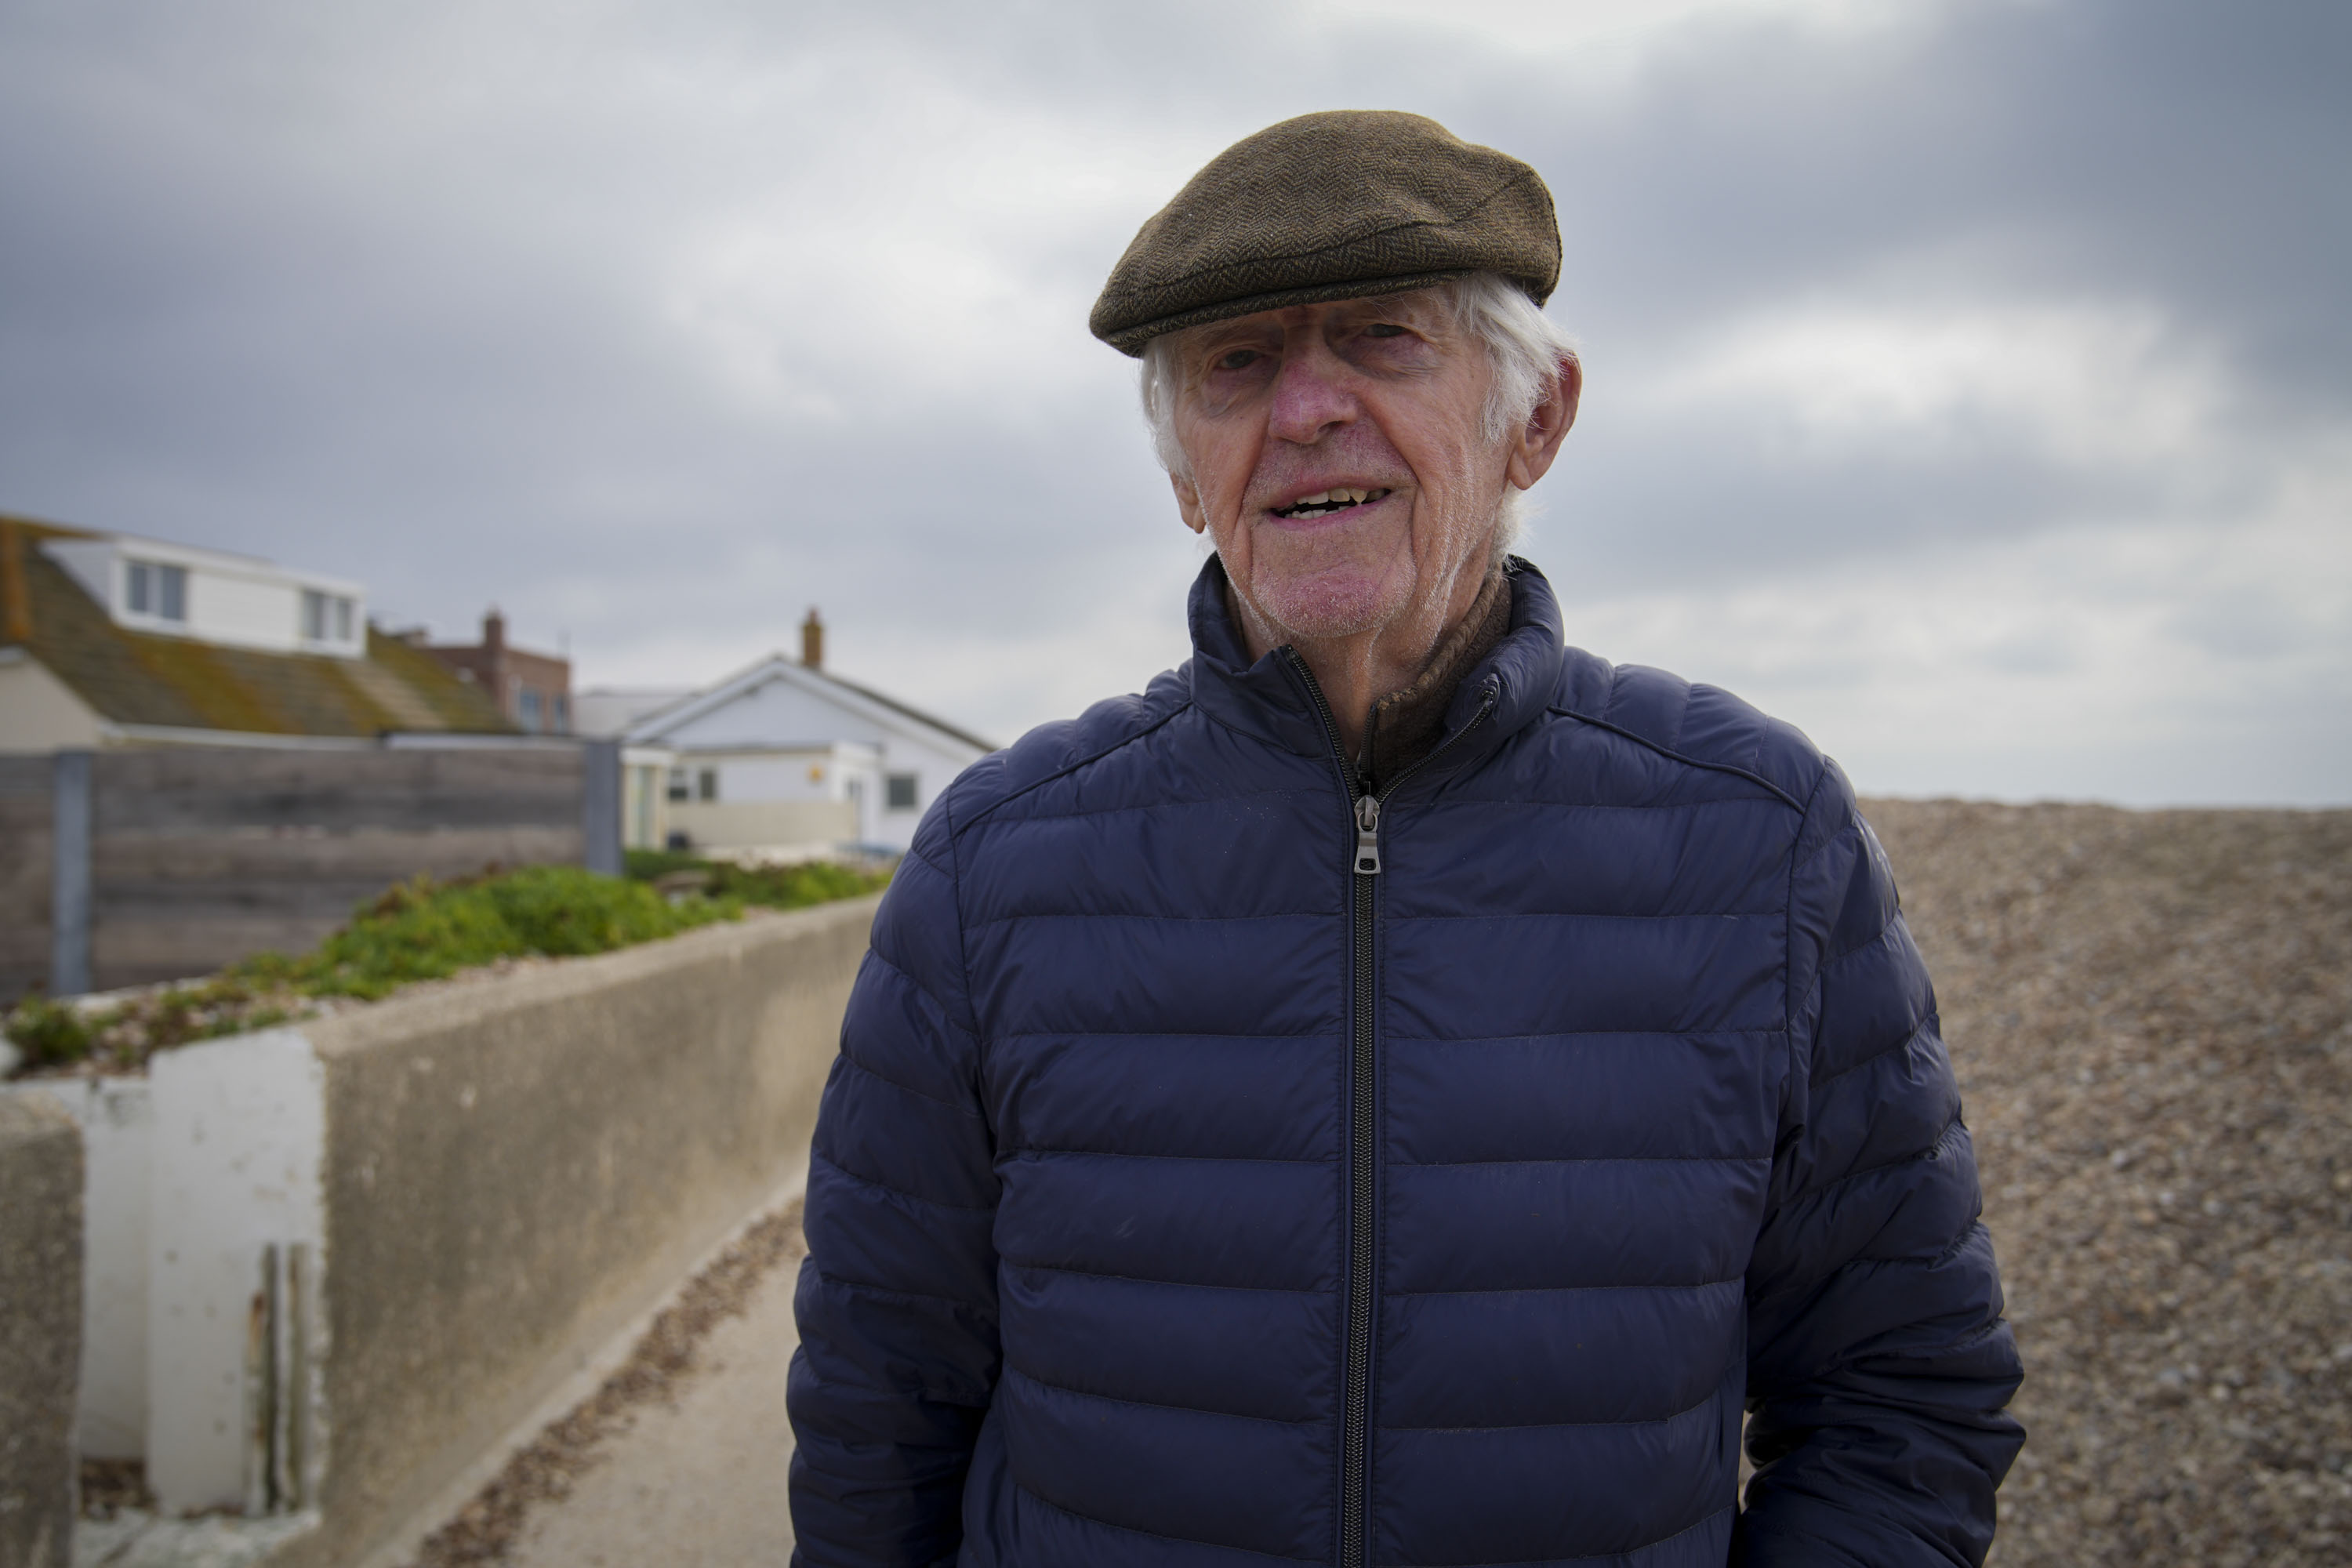 Ken Hearn, 89, sagt, die Arbeiten seien notwendig, um Häuser zu schützen